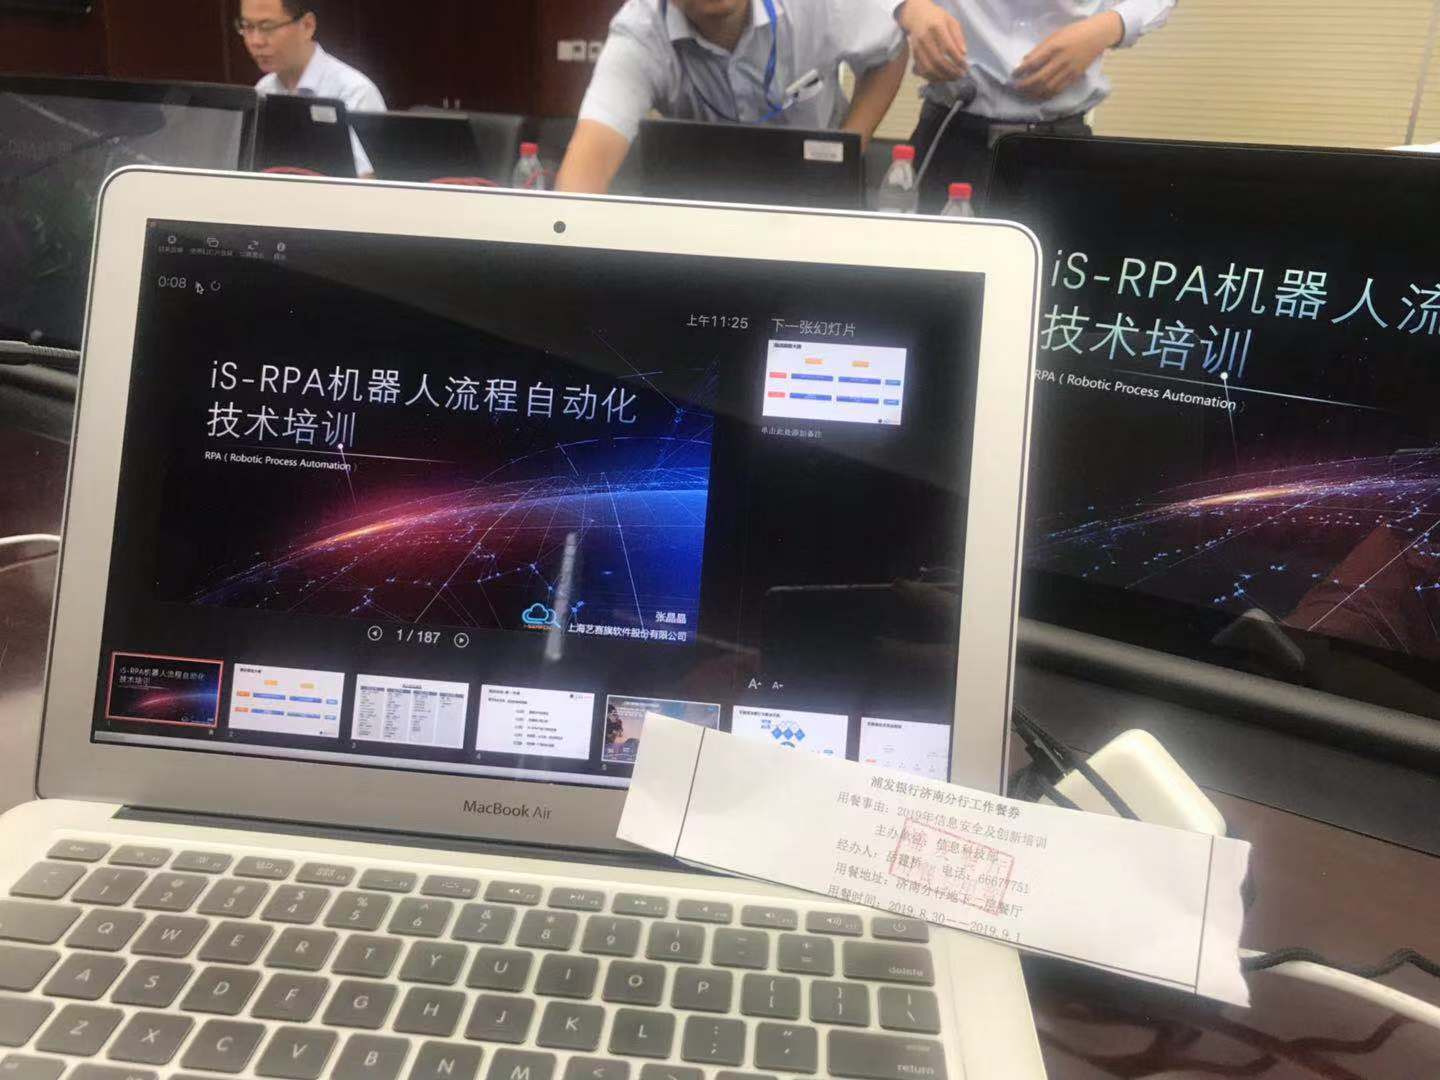 iS-RPA 技术认证培训 - 济南 20190831 班 - 培训完成